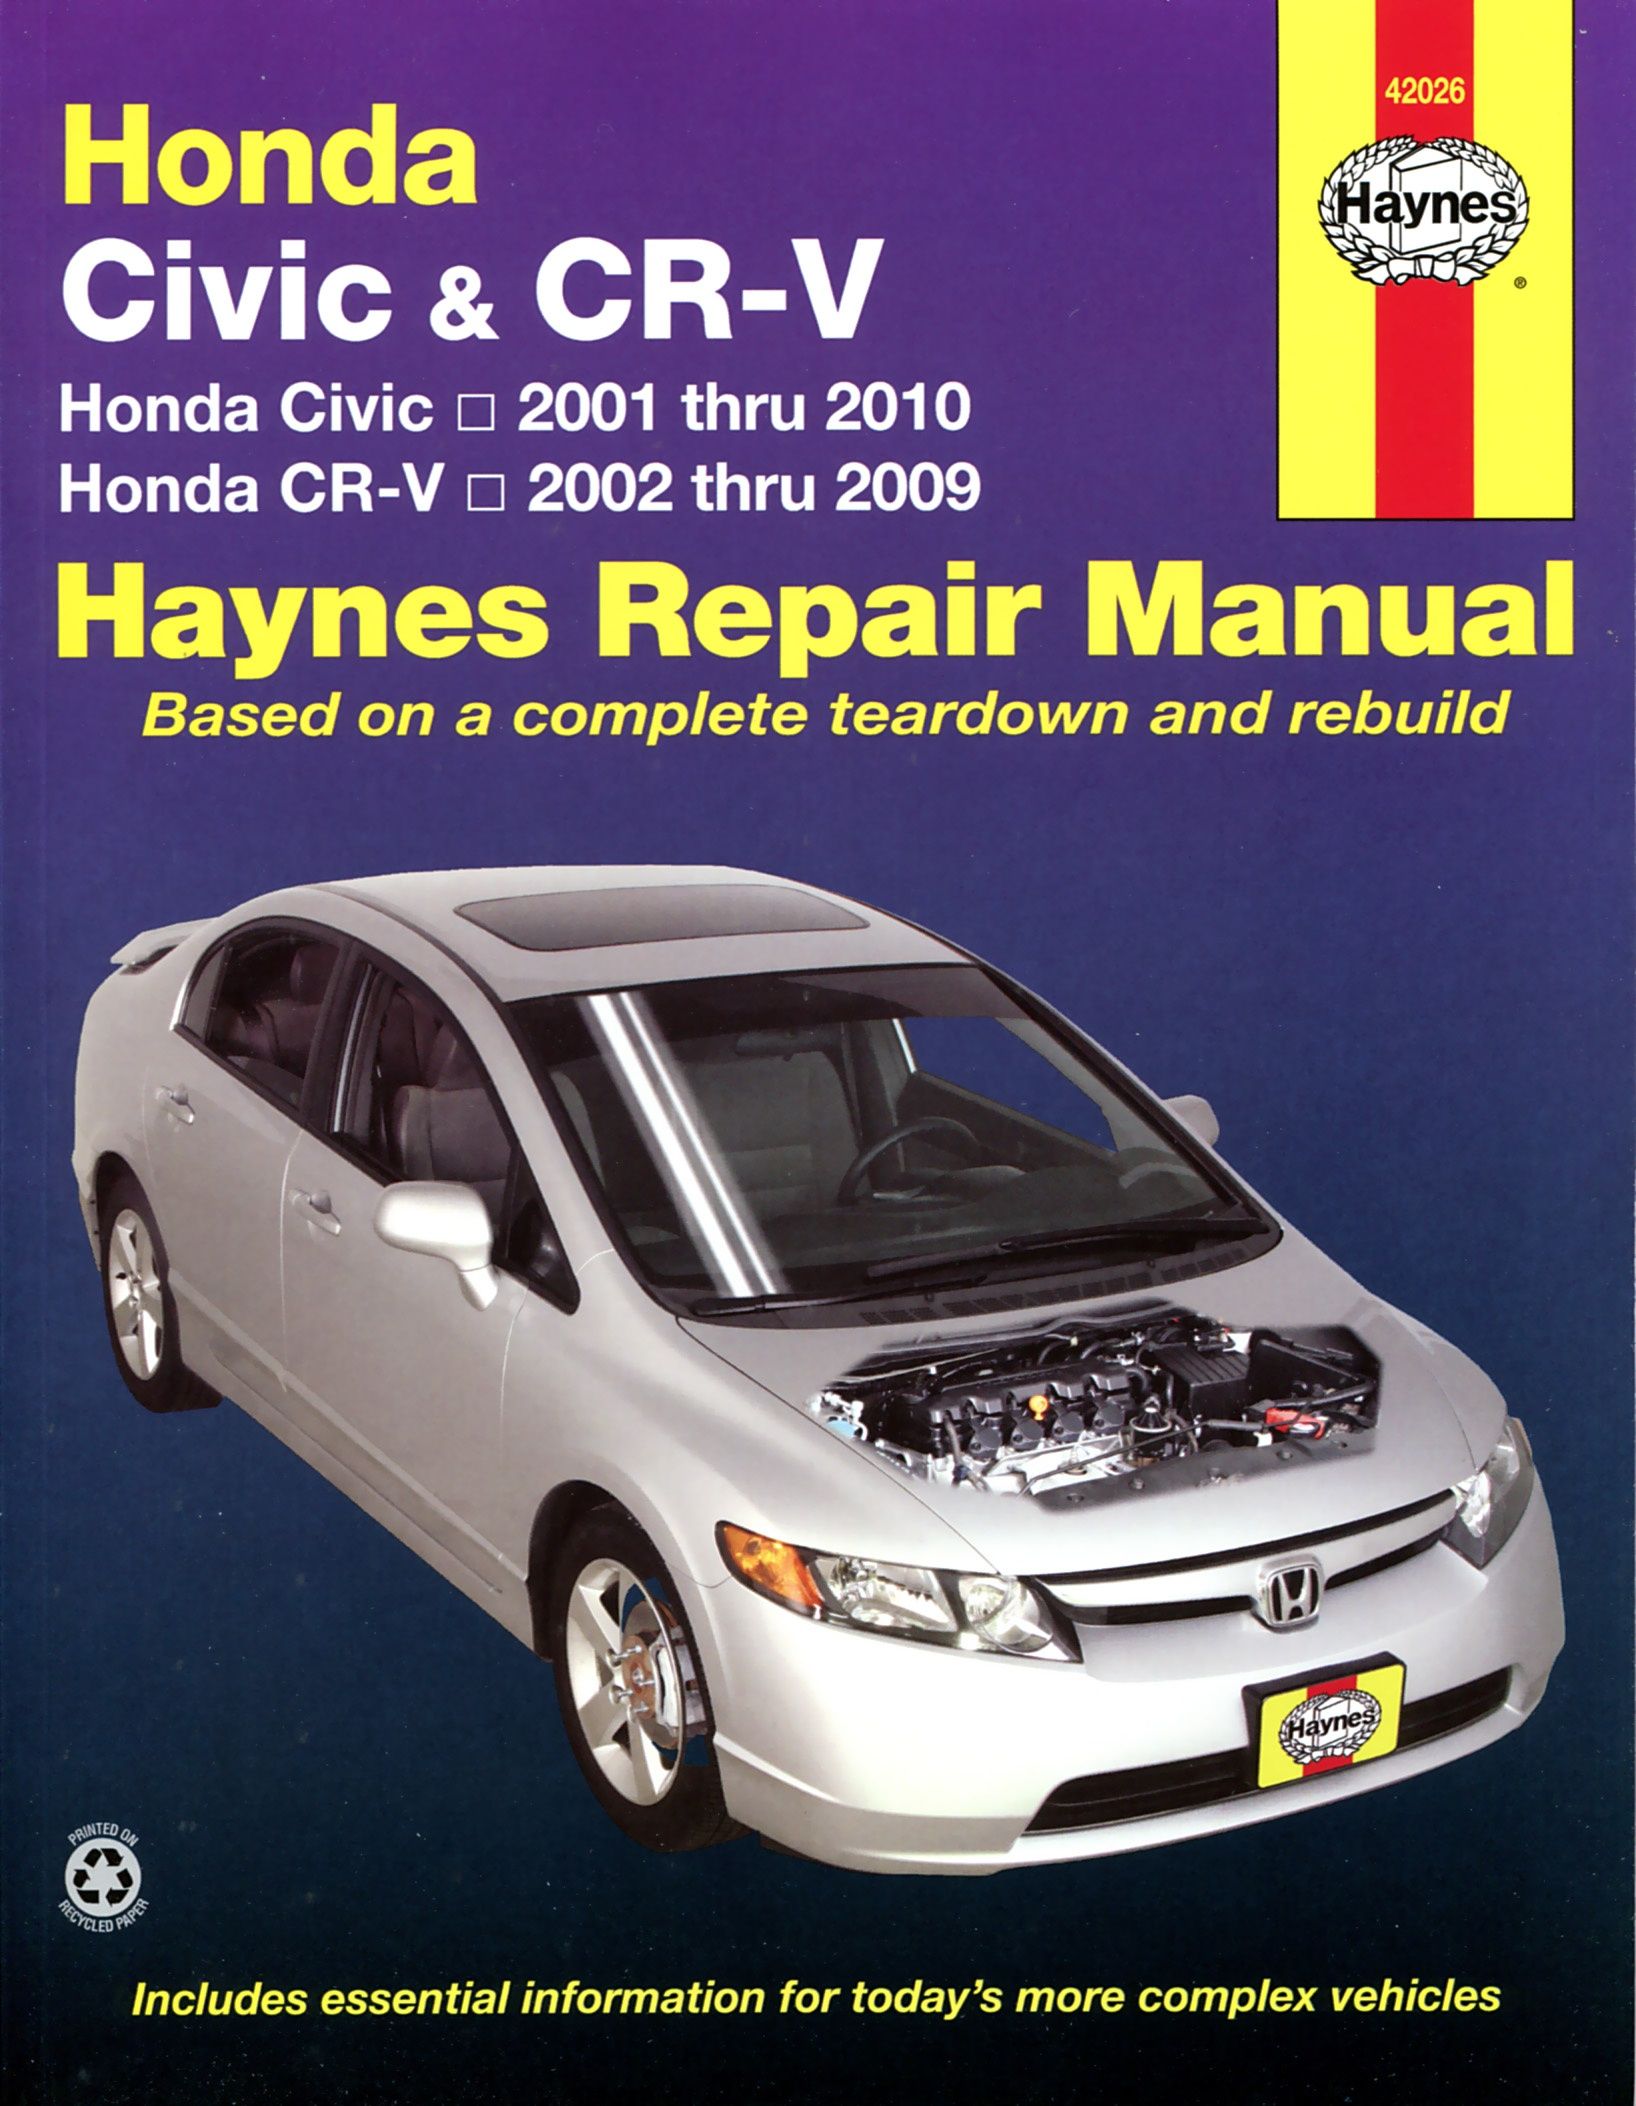 Honda Civic - Honda Cr-V (2001-2010) - Instrukcja Napraw Haynes - Ceny I Opinie - Ceneo.pl